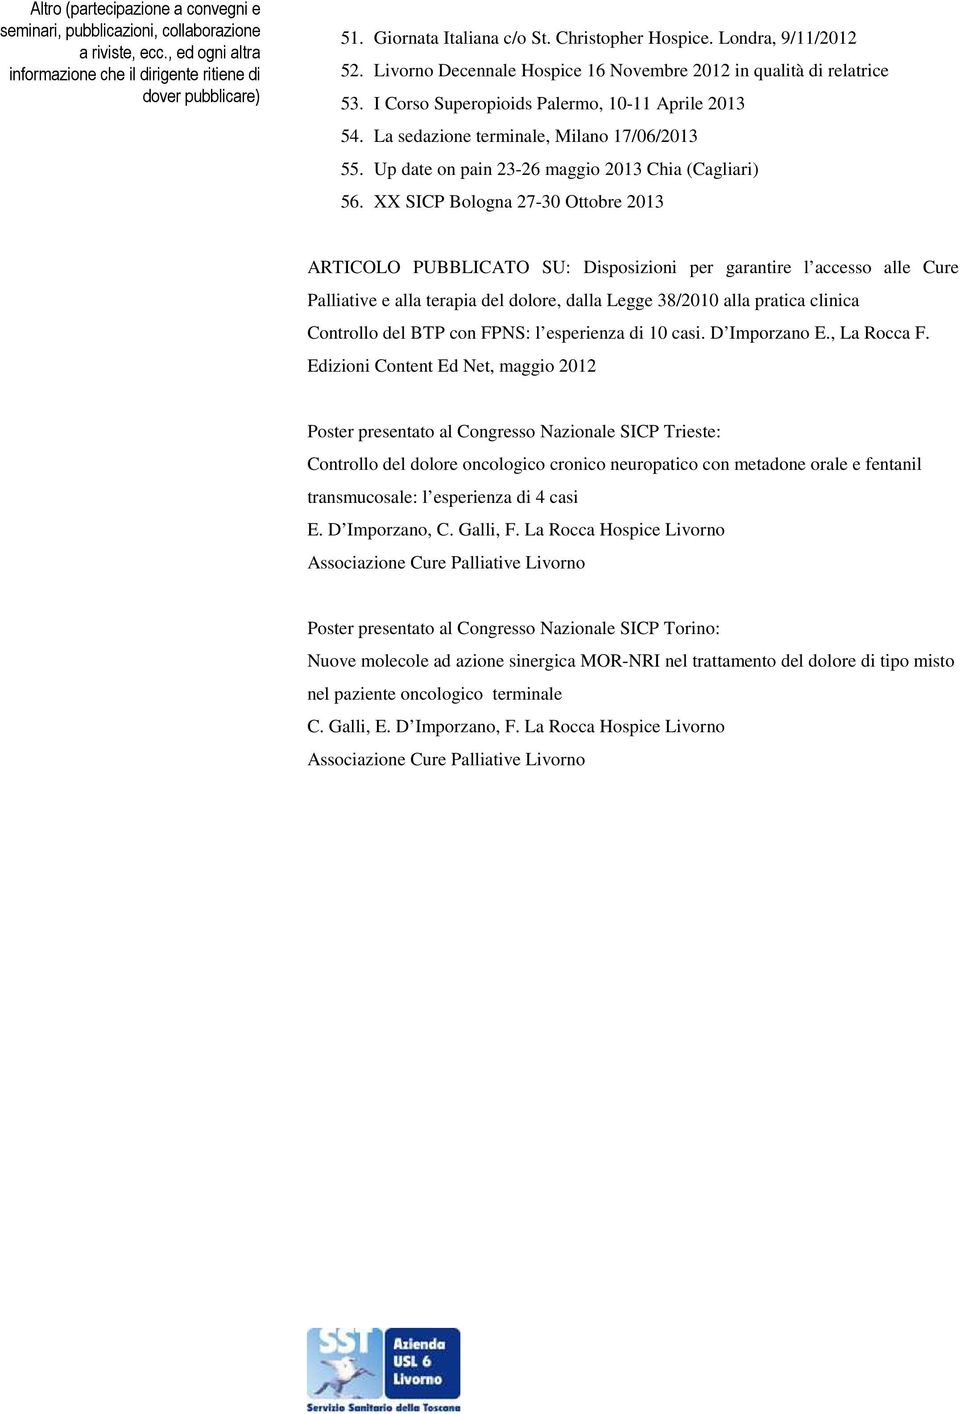 XX SICP Bologna 27-30 Ottobre 2013 ARTICOLO PUBBLICATO SU: Disposizioni per garantire l accesso alle Cure Palliative e alla terapia del dolore, dalla Legge 38/2010 alla pratica clinica Controllo del